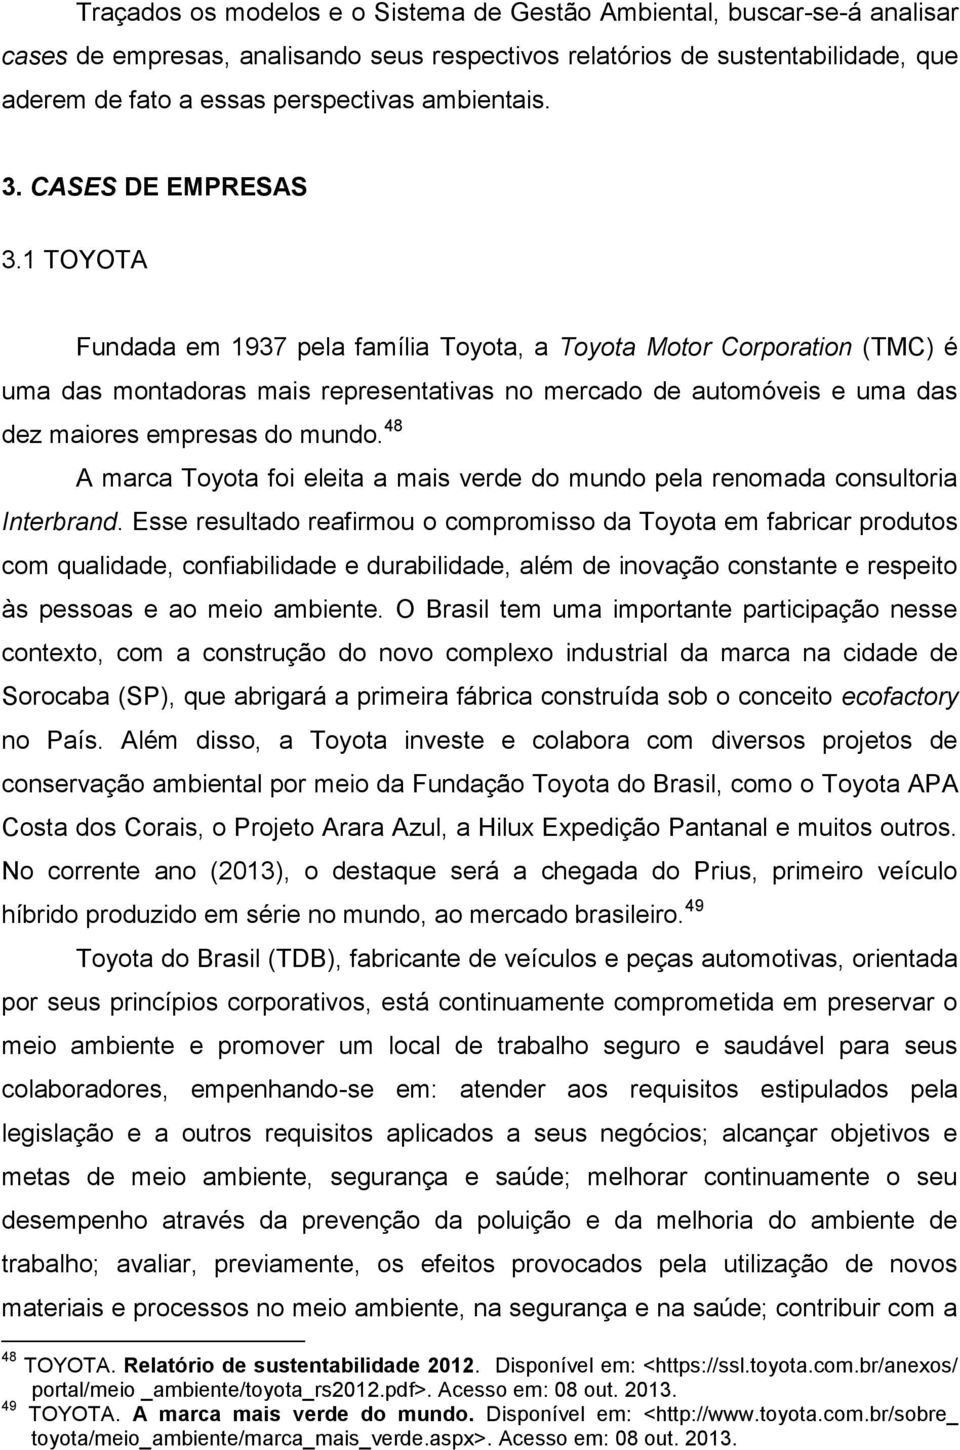 1 TOYOTA Fundada em 1937 pela família Toyota, a Toyota Motor Corporation (TMC) é uma das montadoras mais representativas no mercado de automóveis e uma das dez maiores empresas do mundo.